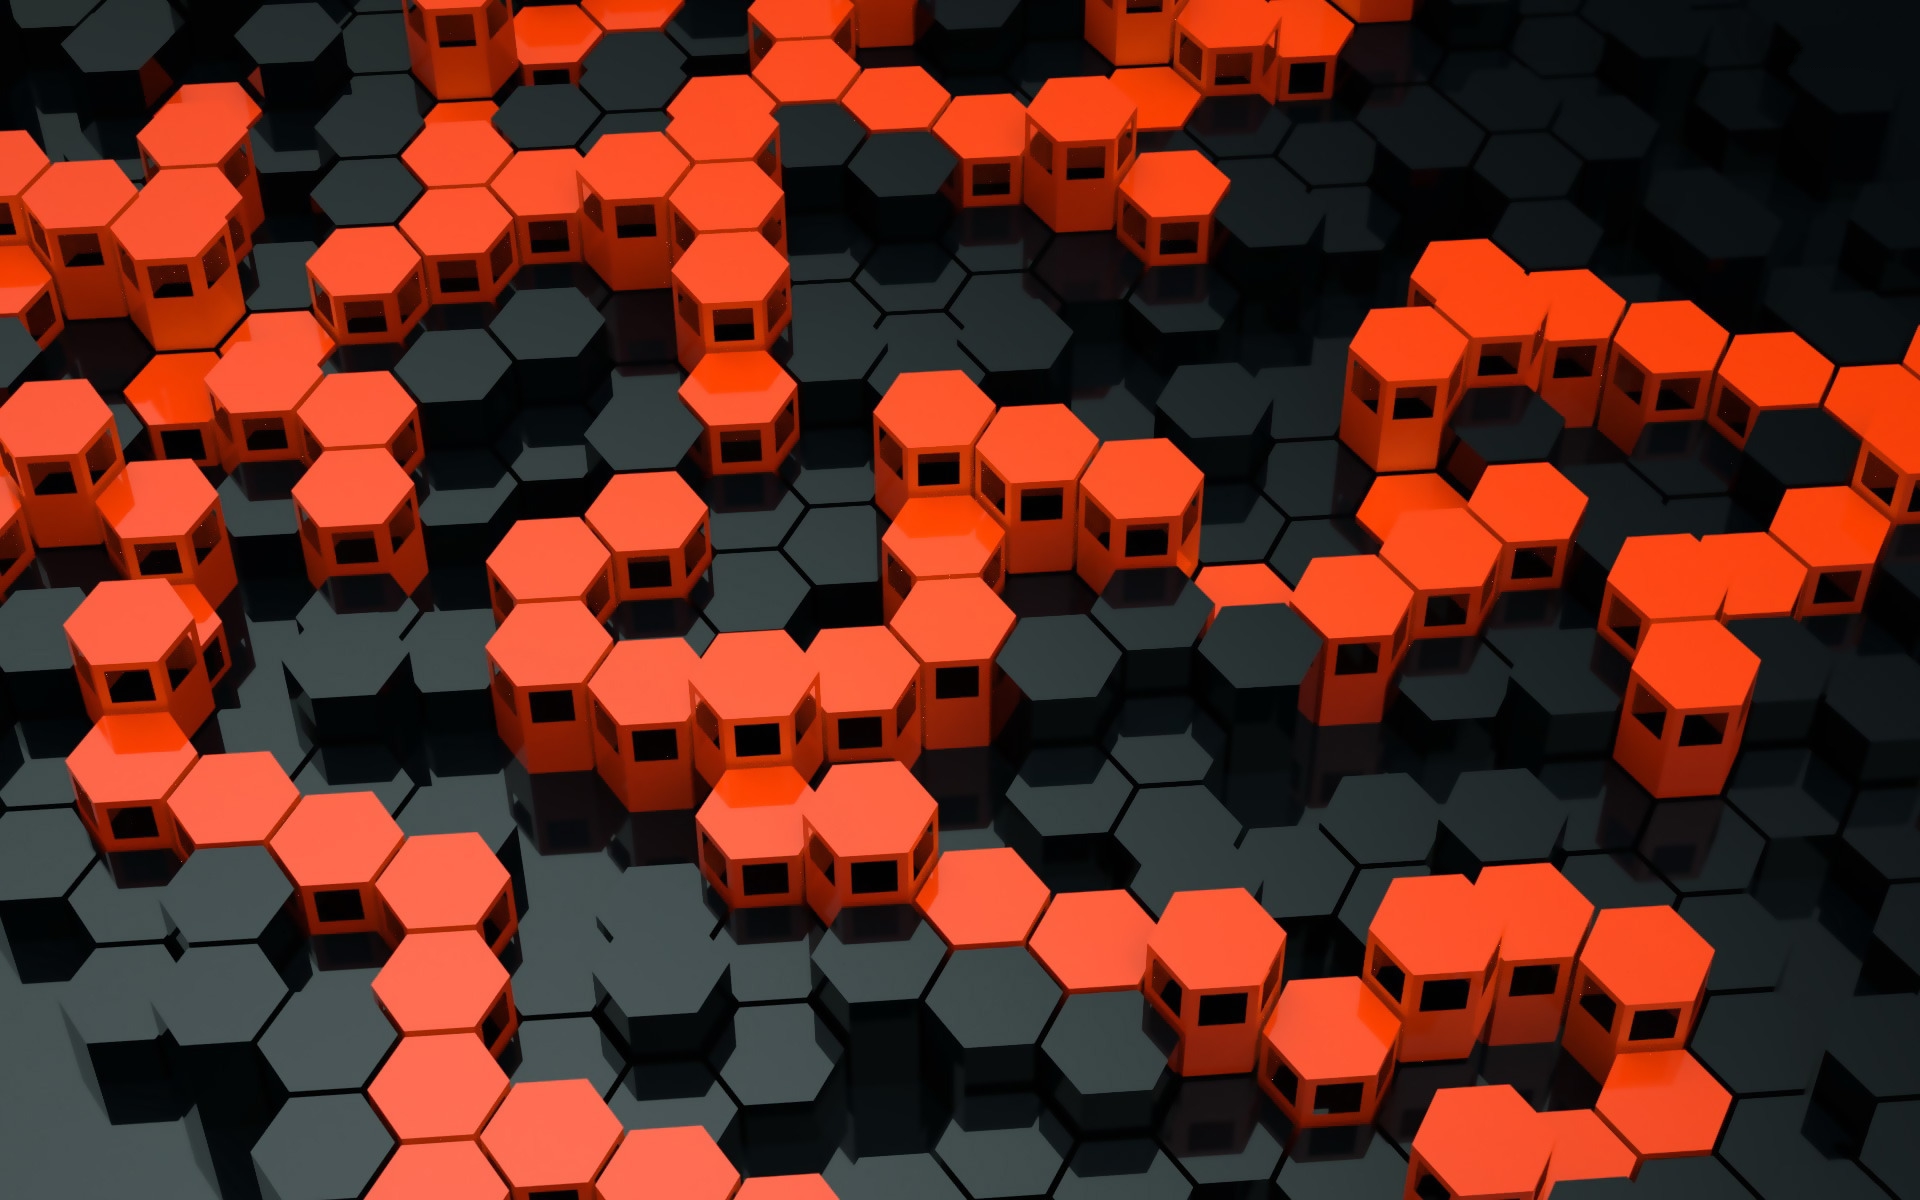 Black and Orange Desktop Wallpaper | PixelsTalk.Net